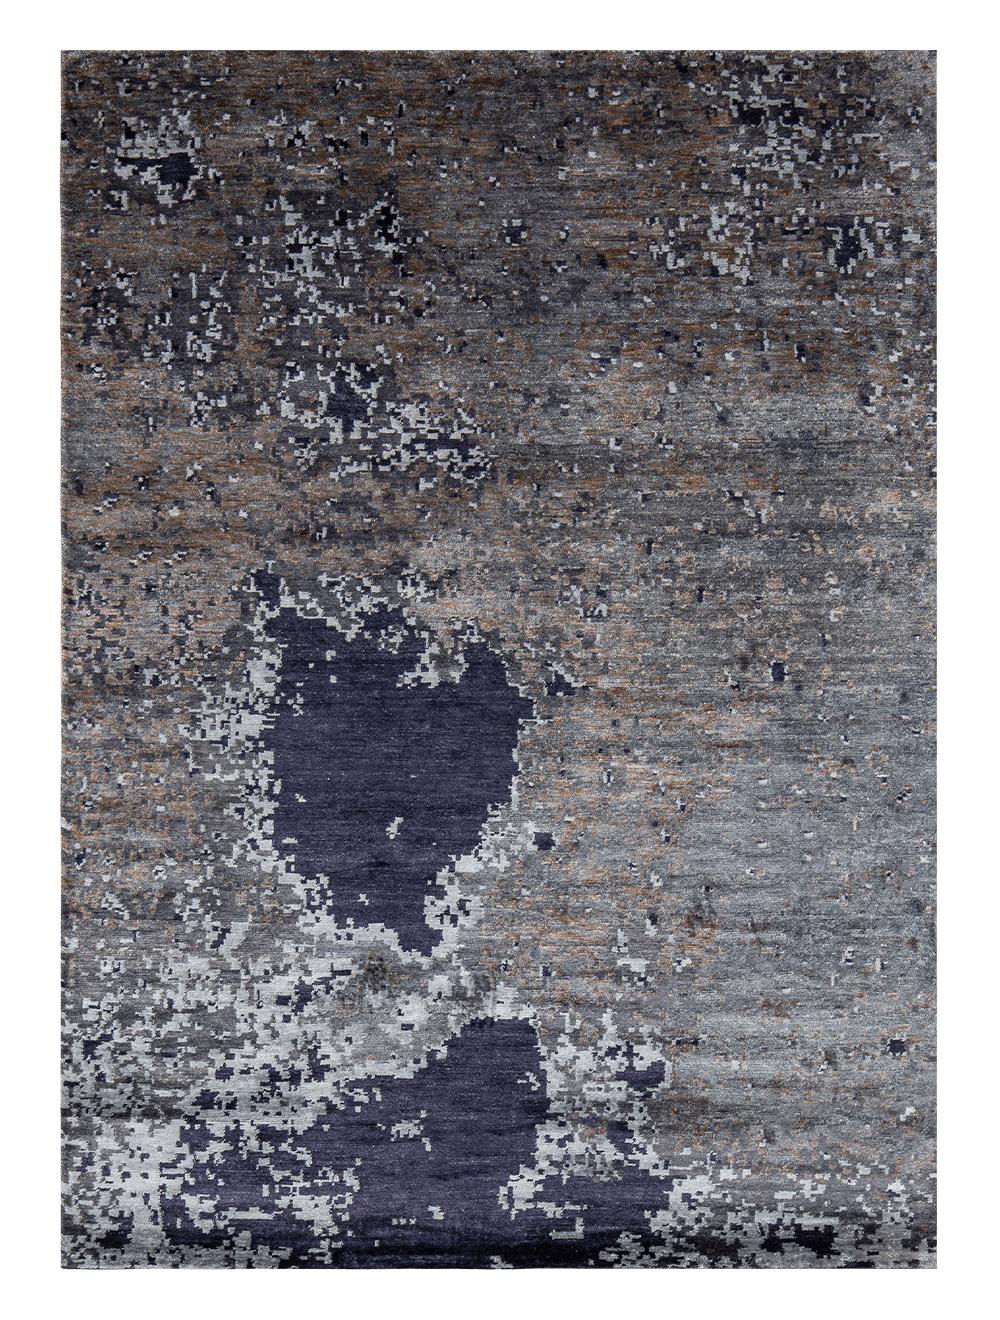 Mondnacht-Teppich von Massimo Copenhagen
Handgeknüpft
MATERIALIEN:  100% Bambus 
Abmessungen: B 200 x H 300 cm
Verfügbare Farben: Moon Night und Copper Moon.
Andere Abmessungen sind möglich: 170x240 cm und Sondergrößen.

Moon Night ist ein